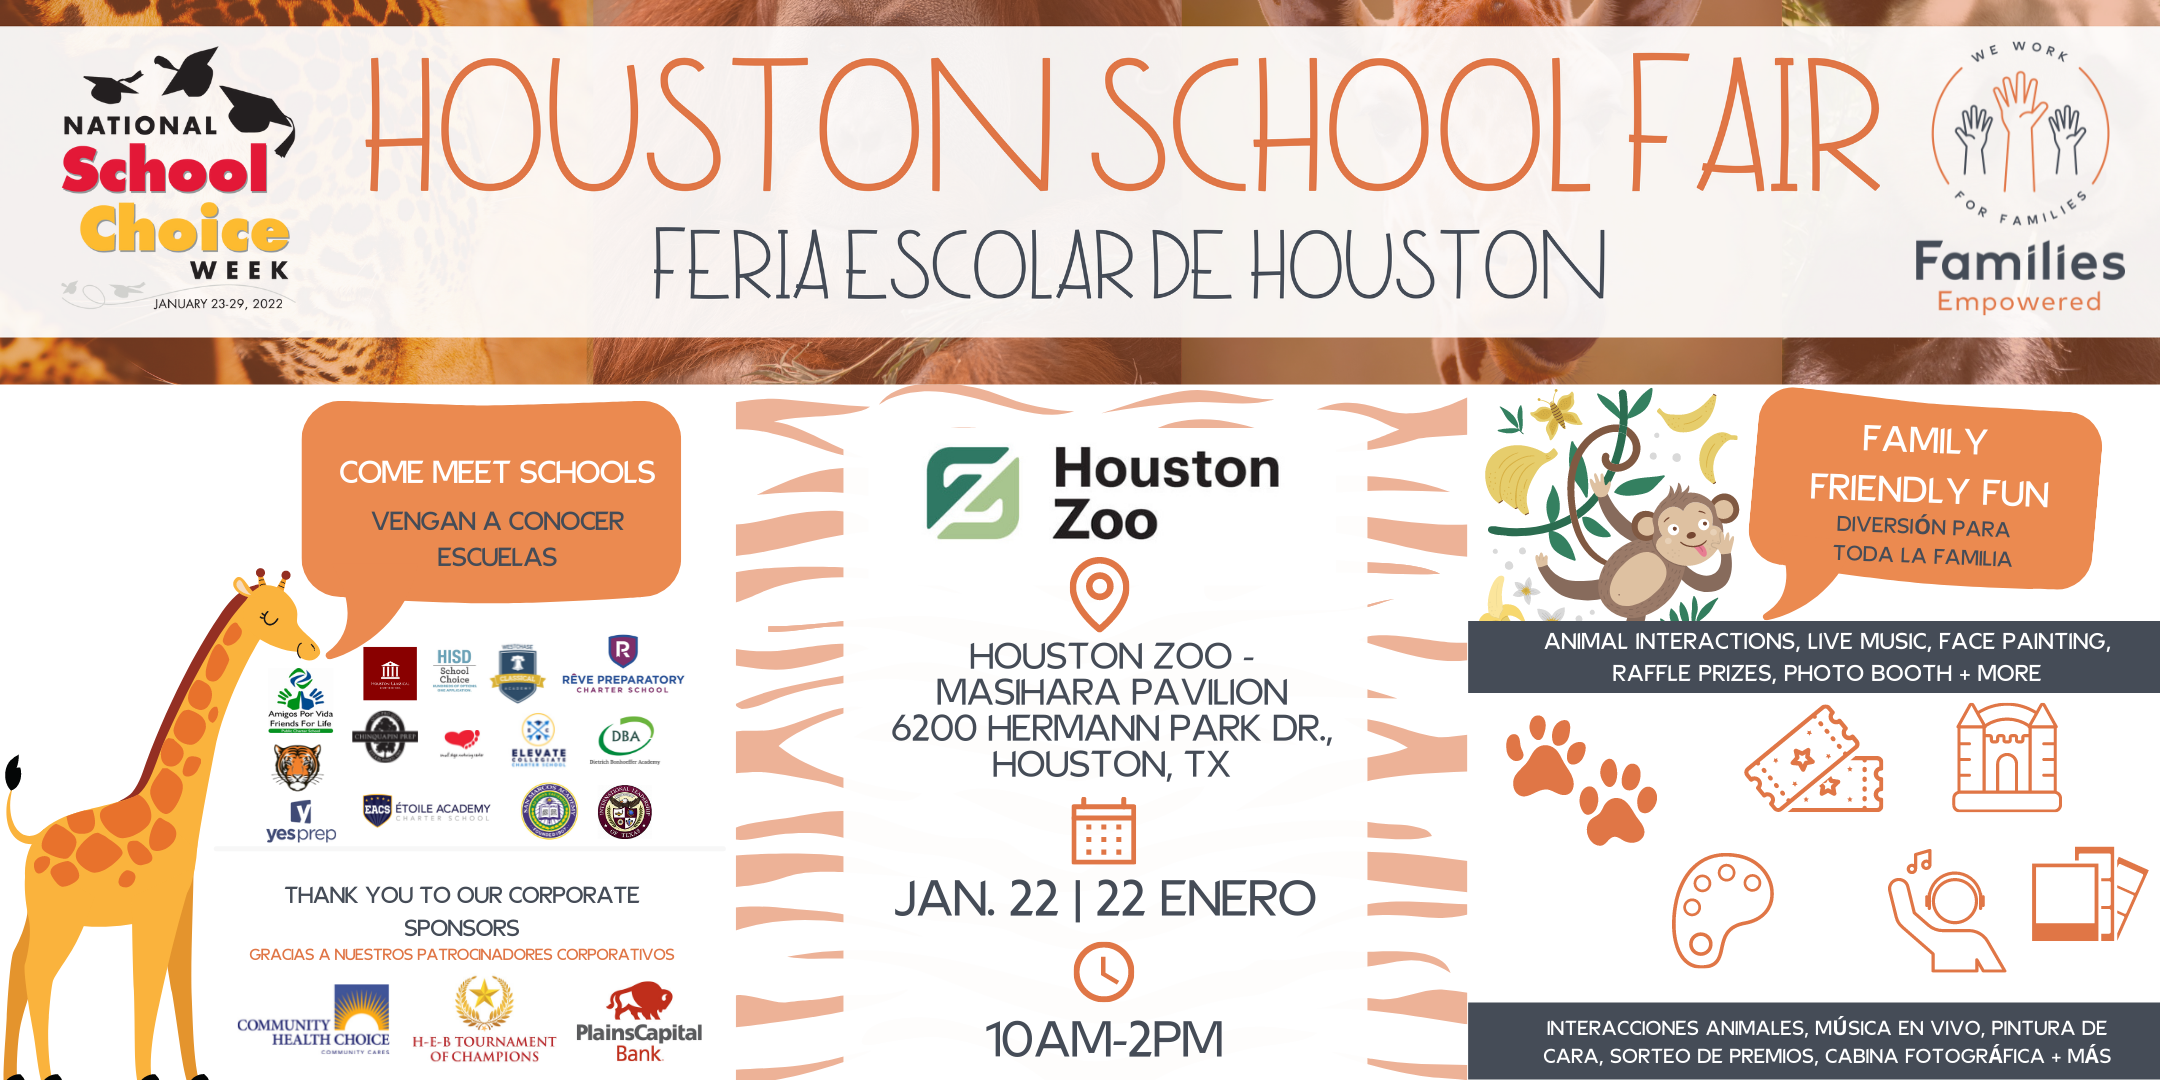 FREE Houston School Fair at the Houston Zoo